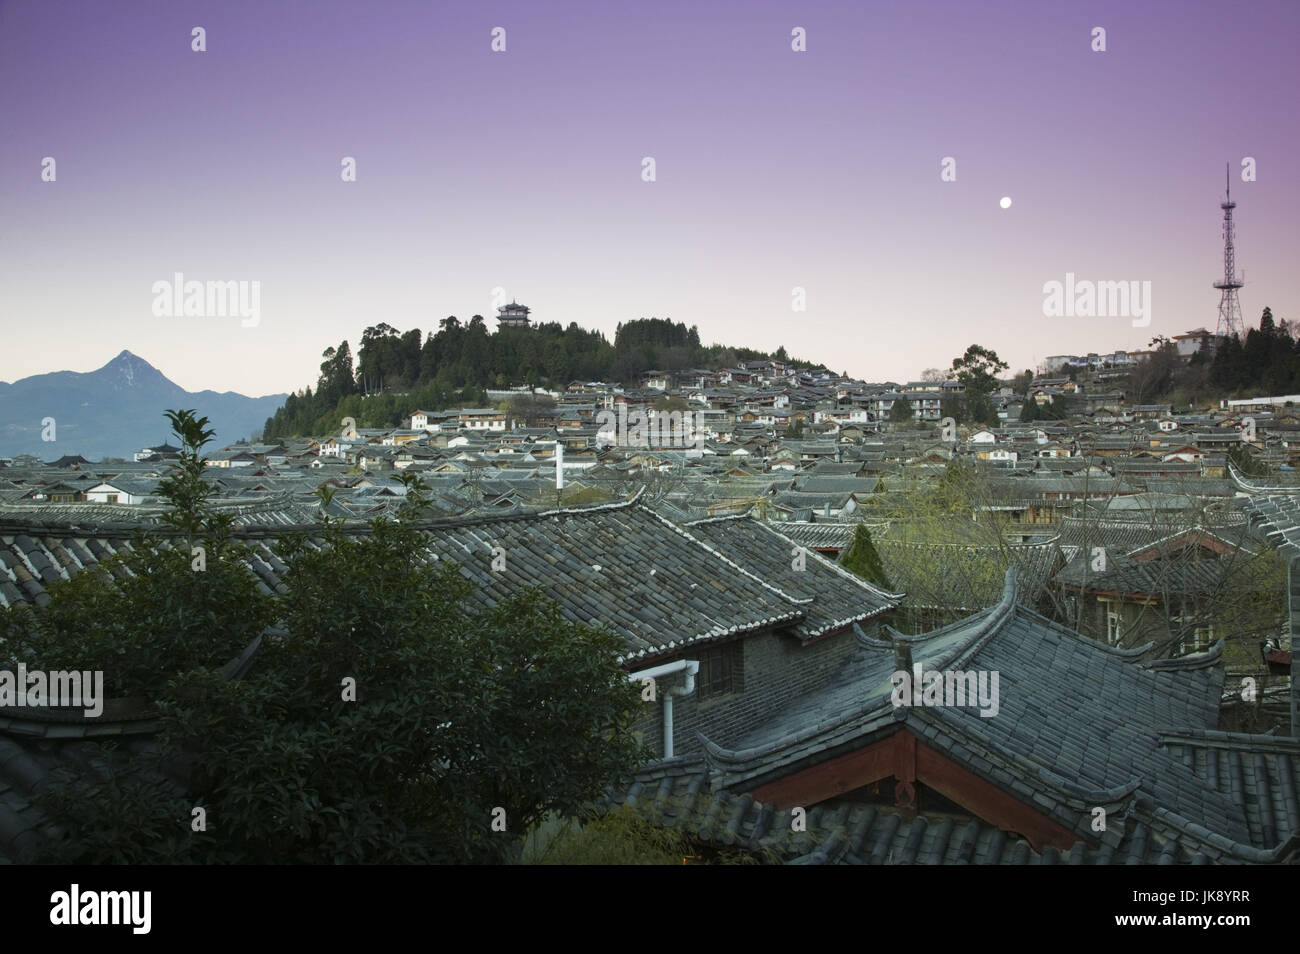 China, Provinz Yunnan, Lijiang, Altstadt, Häuser, Dächer, Shizi Shan, Tempel, Dämmerung, Stock Photo